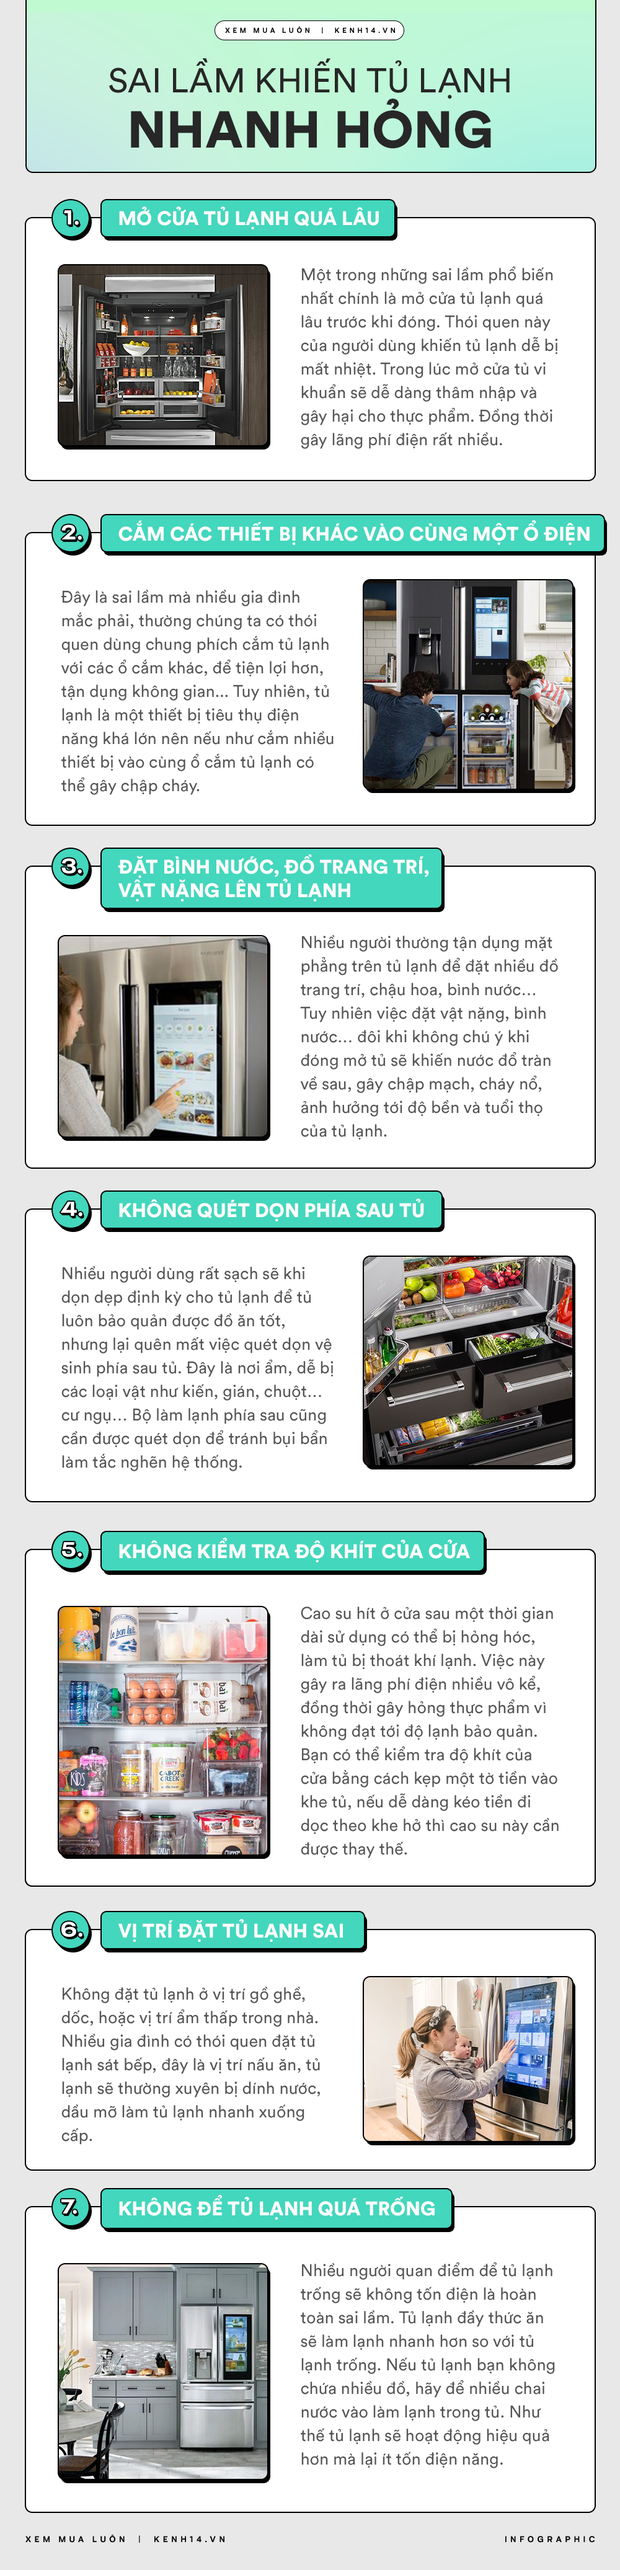 Góc chị em low-tech: 7 sai lầm phổ biến khiến tủ lạnh nhanh hỏng - Ảnh 1.